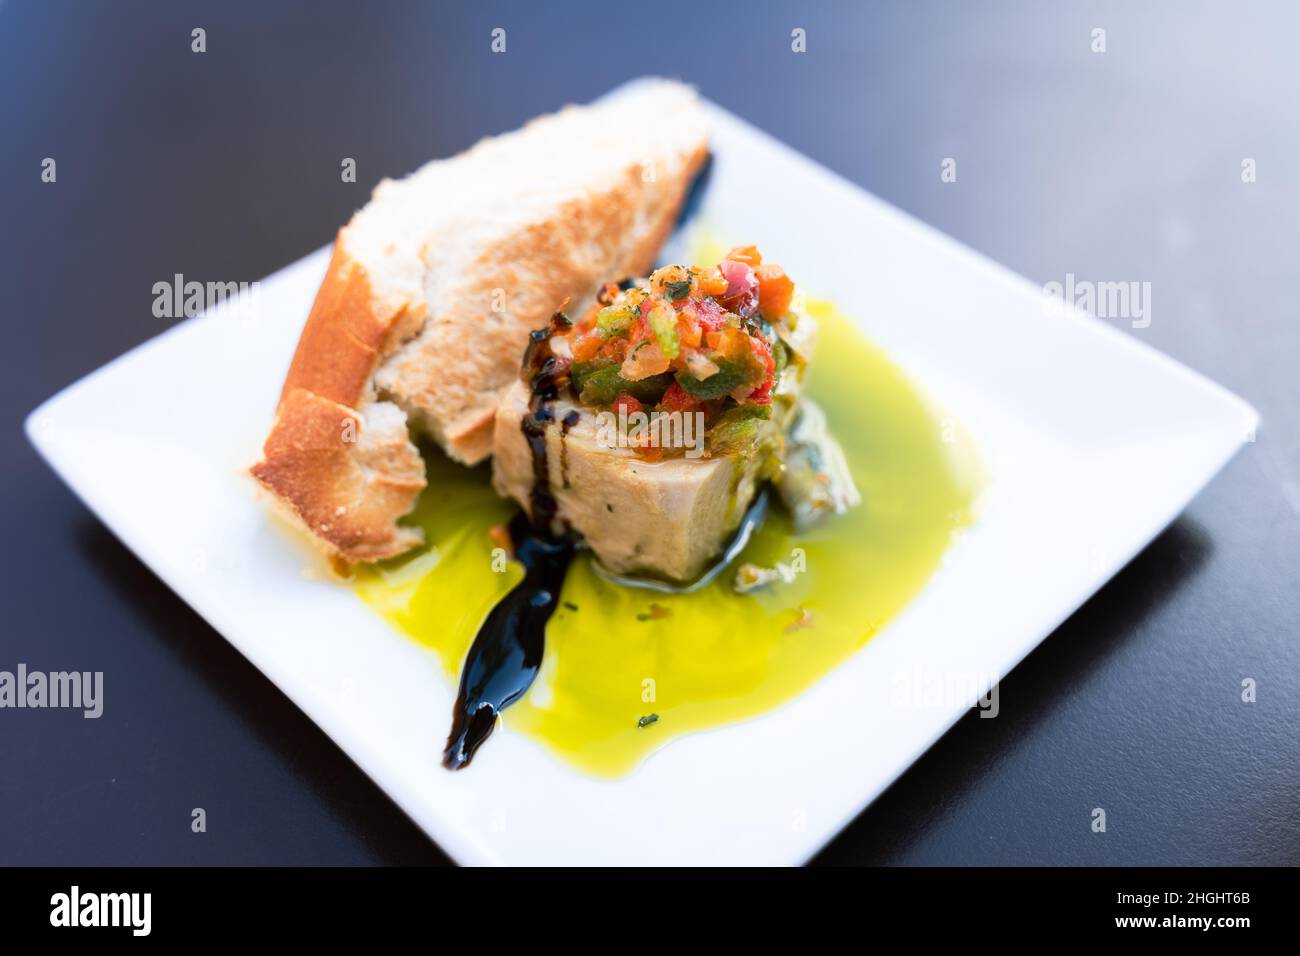 Tapa traditionnel espagnol à base de thon avec tranche de pain, poivrons hachés sur le dessus et huile d'olive.Restaurant bar snack sur l'assiette Banque D'Images